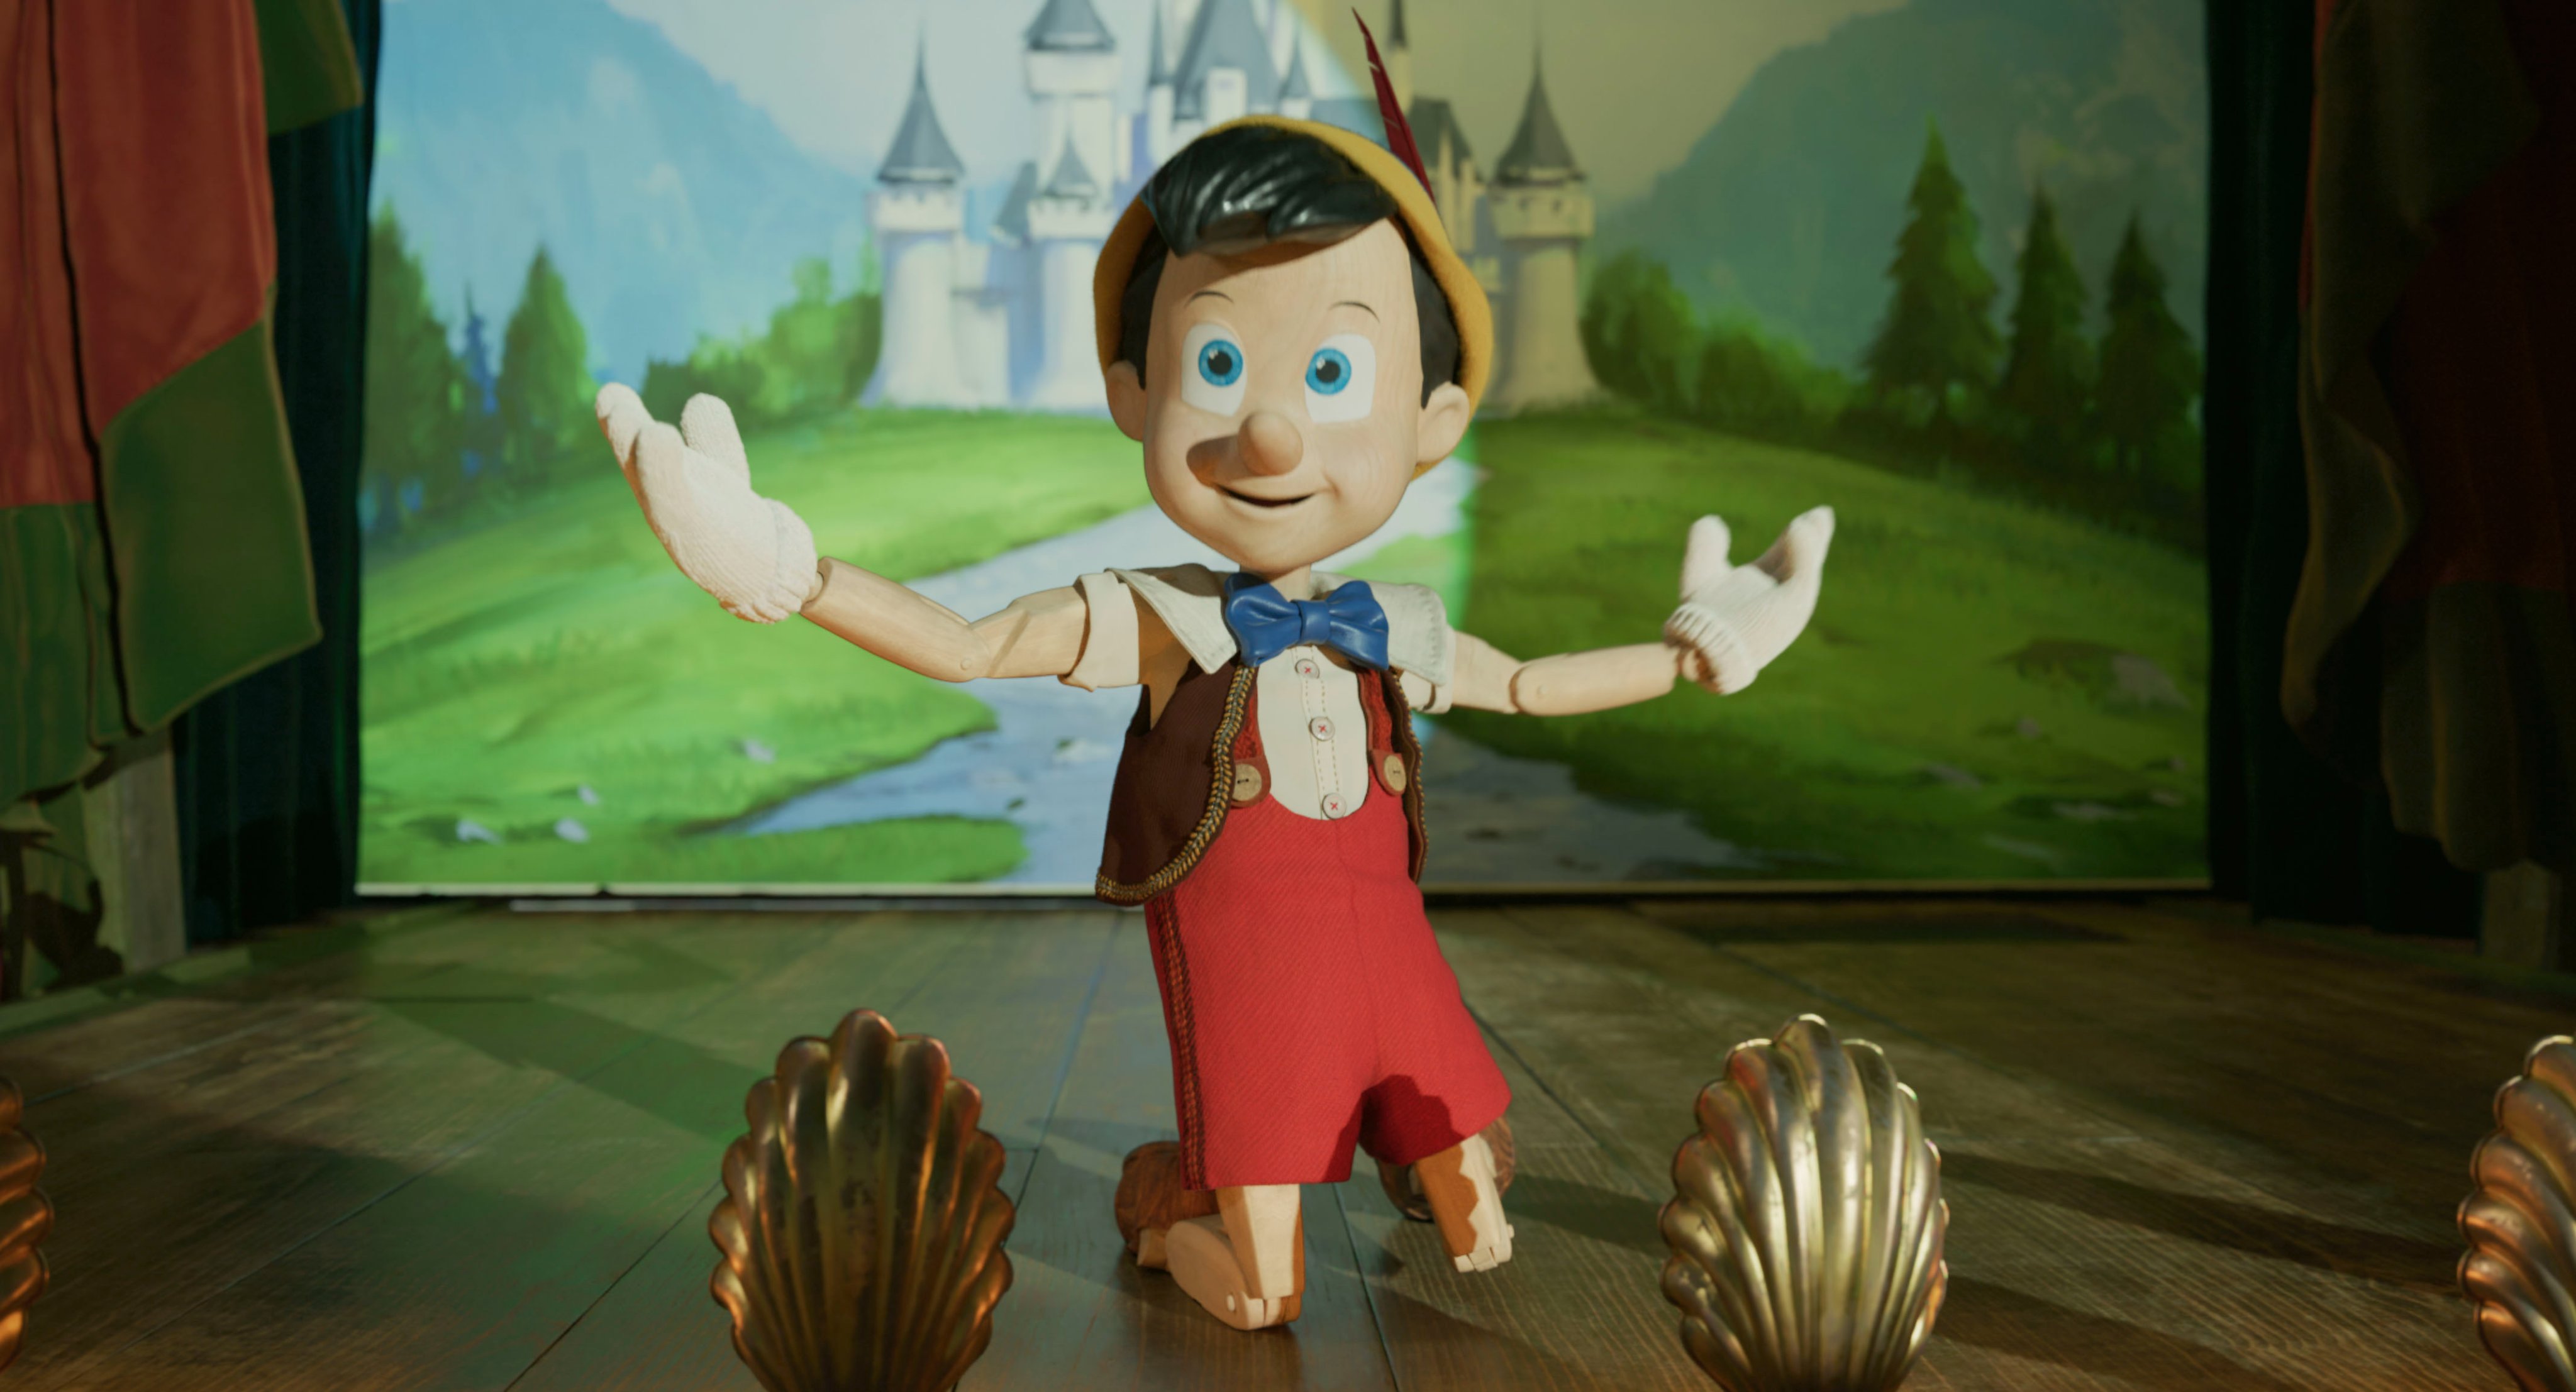 《木偶奇遇记》是迪士尼全新真人版童话电影。